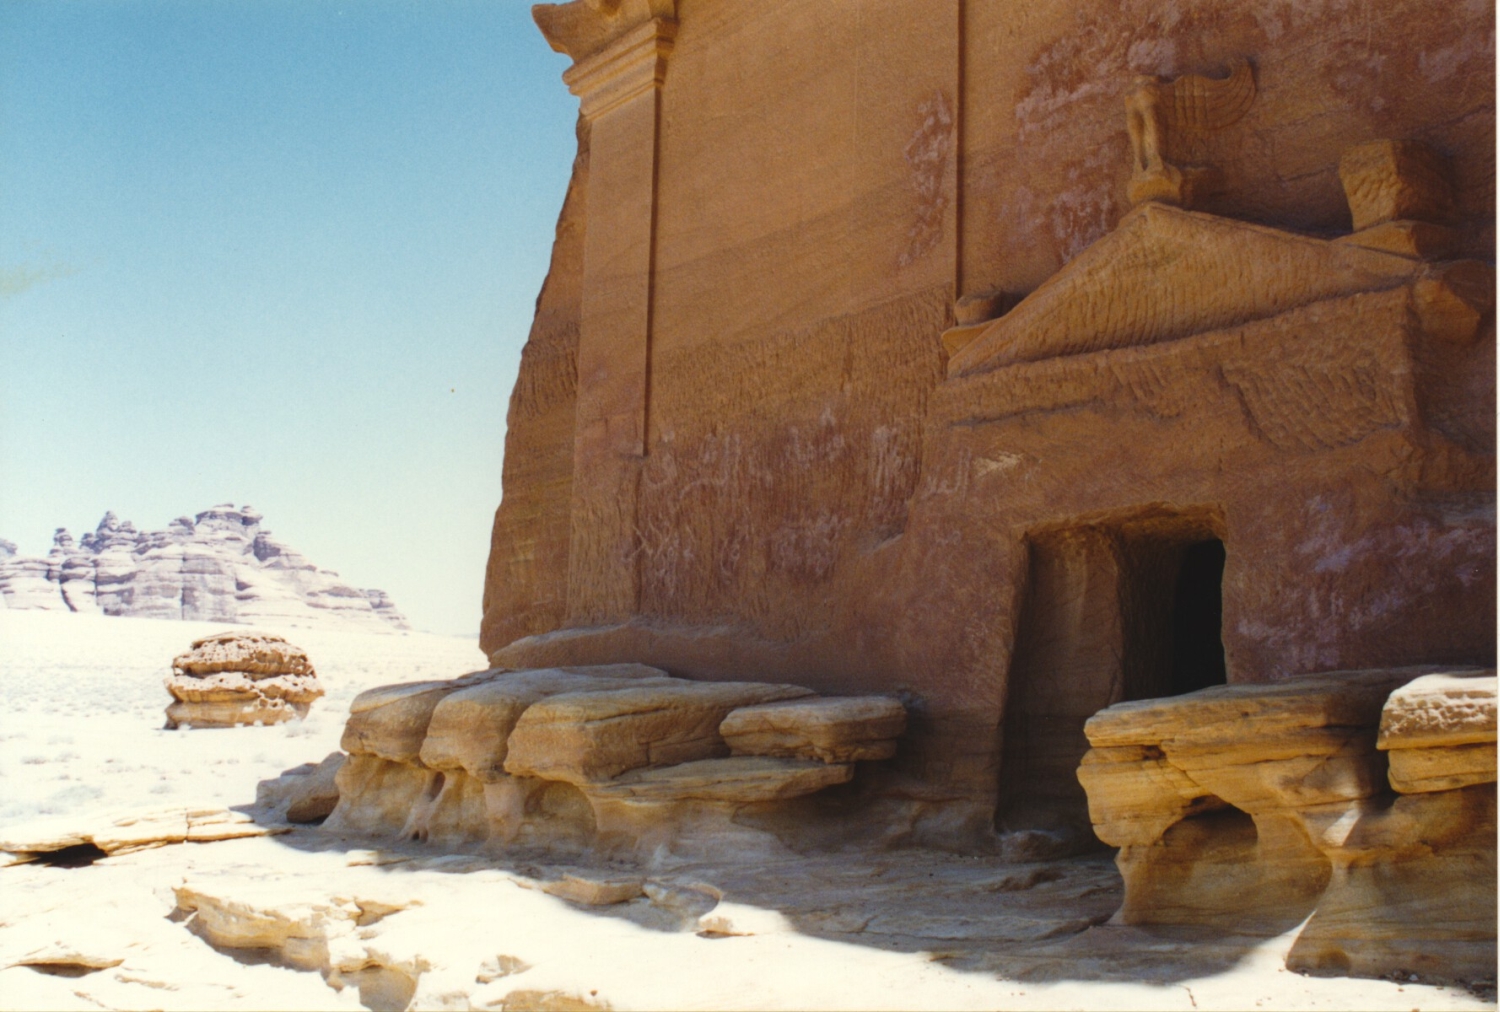 Qasr Al-Farid tomb entrance with sculpture over pediment